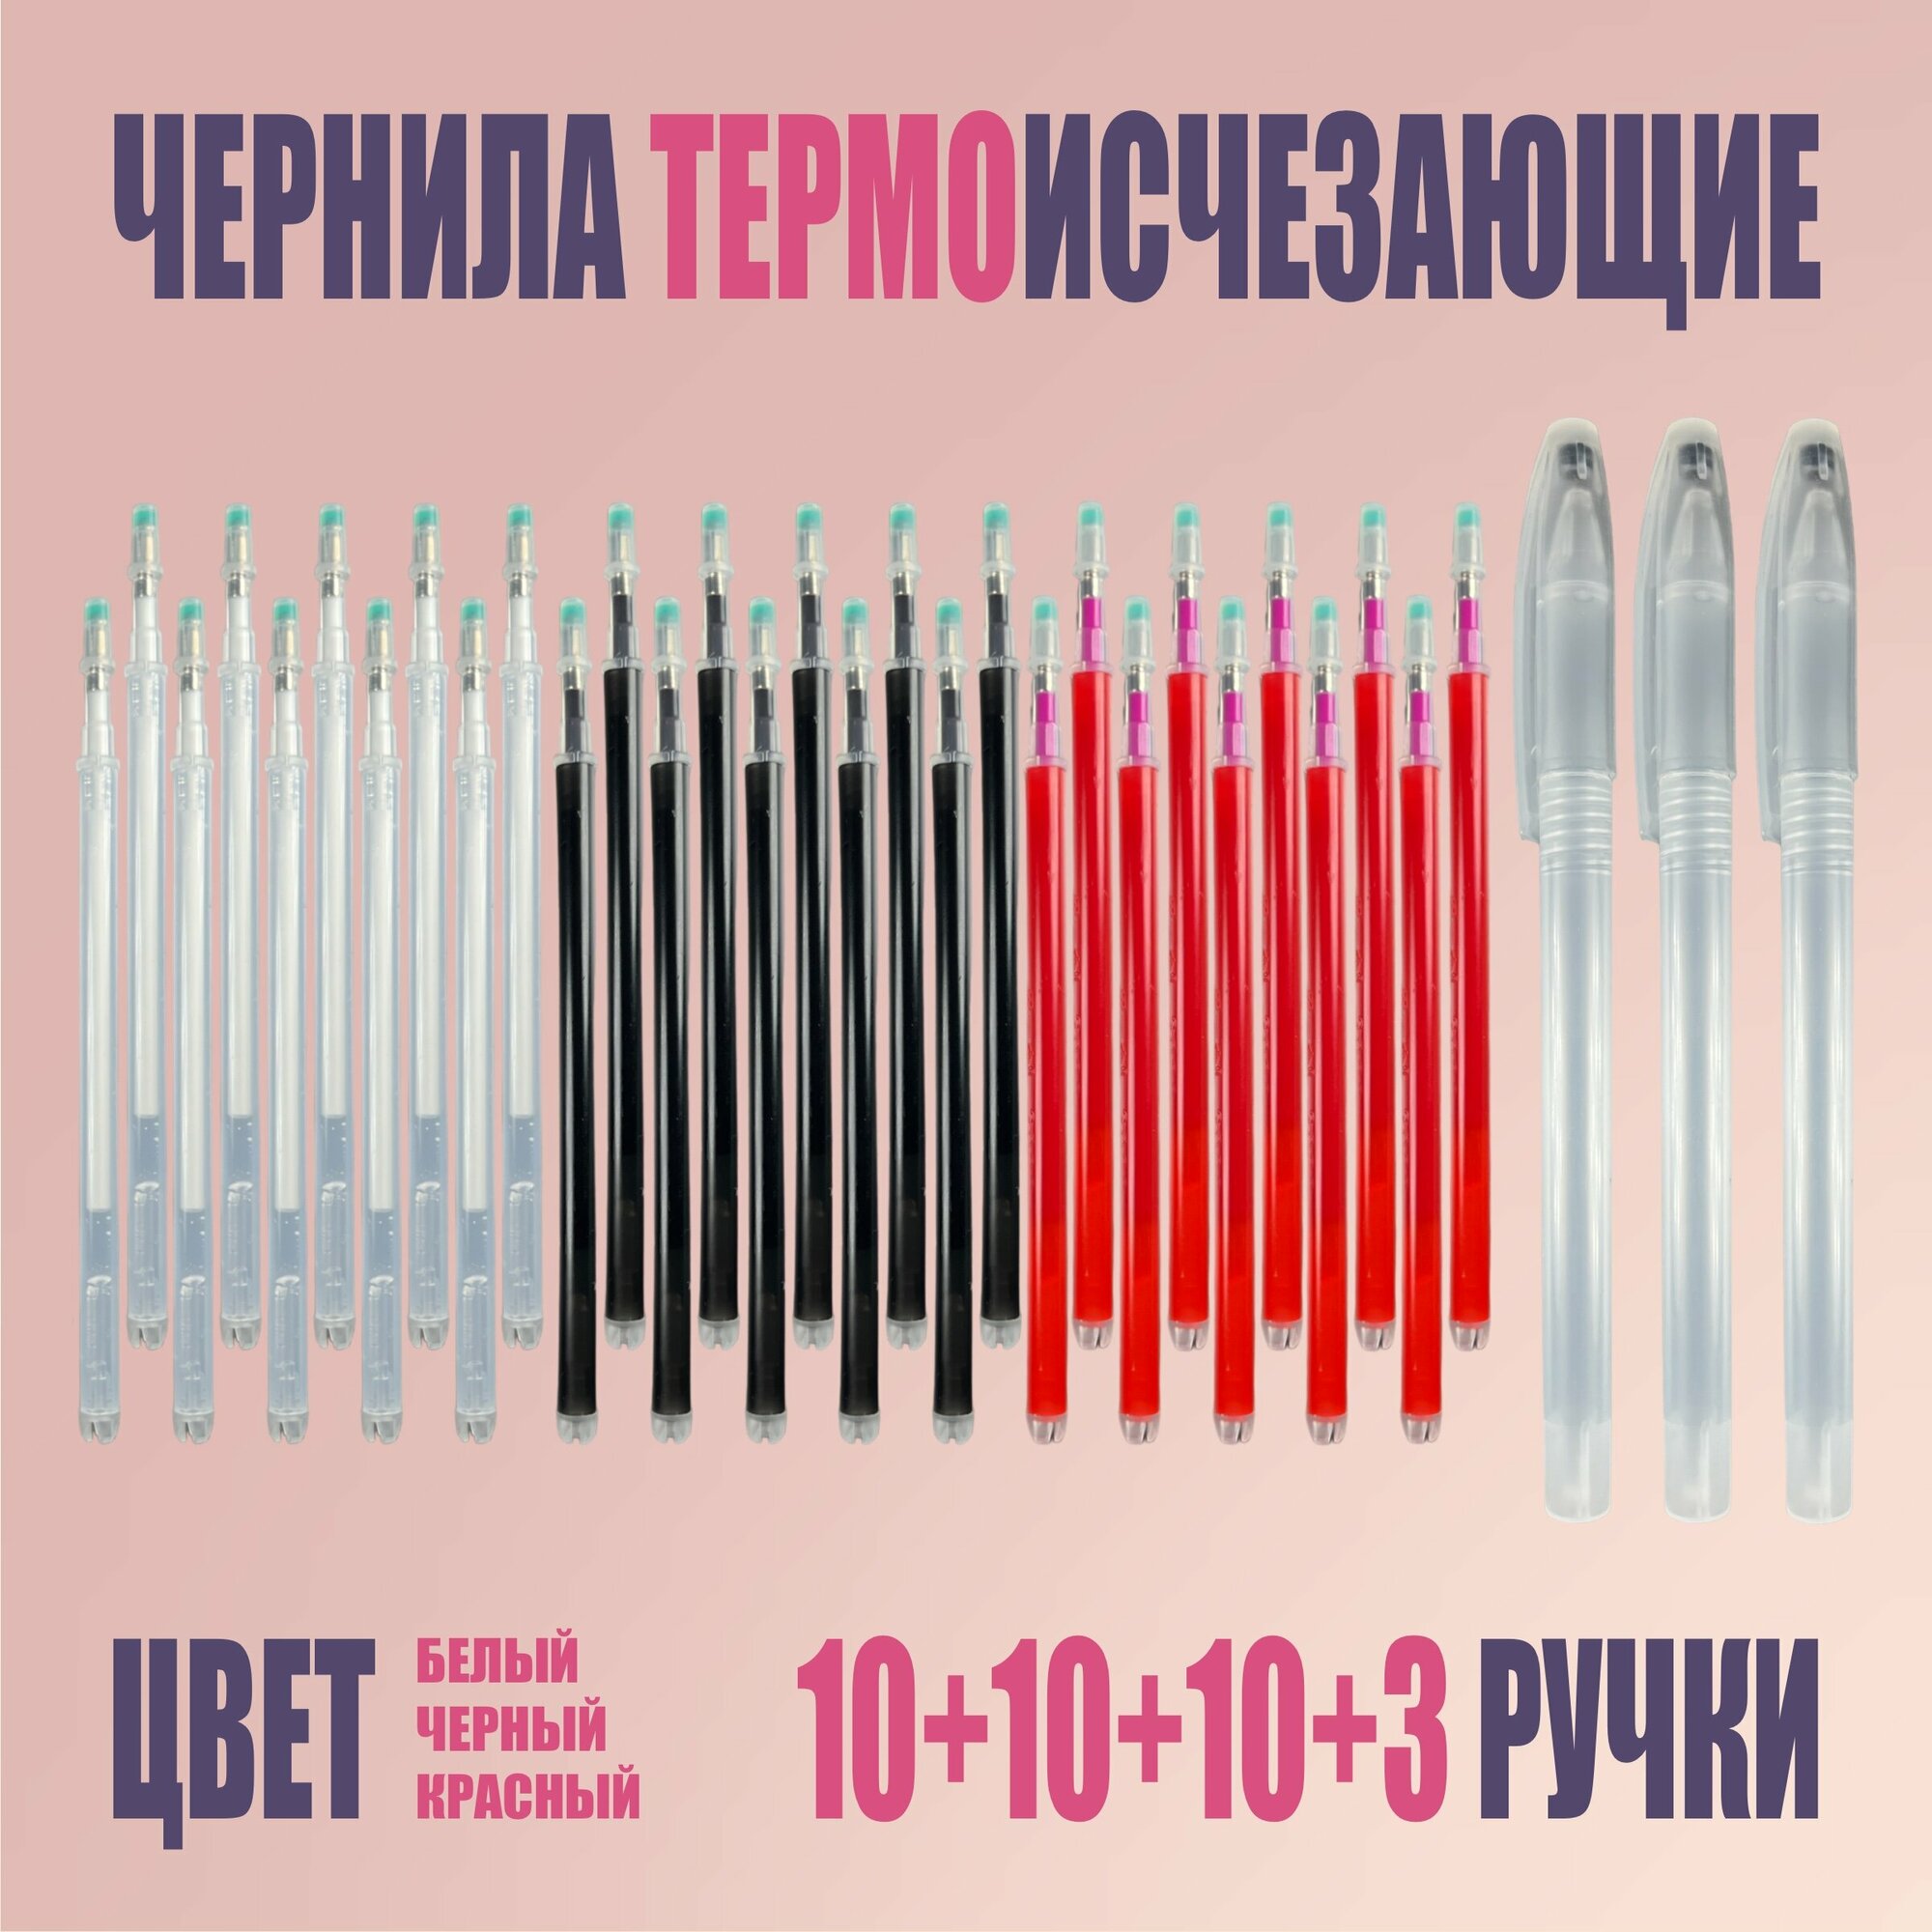 Термоисчезающие ручки и стержни, белые, черные и красные 30+3 шт.